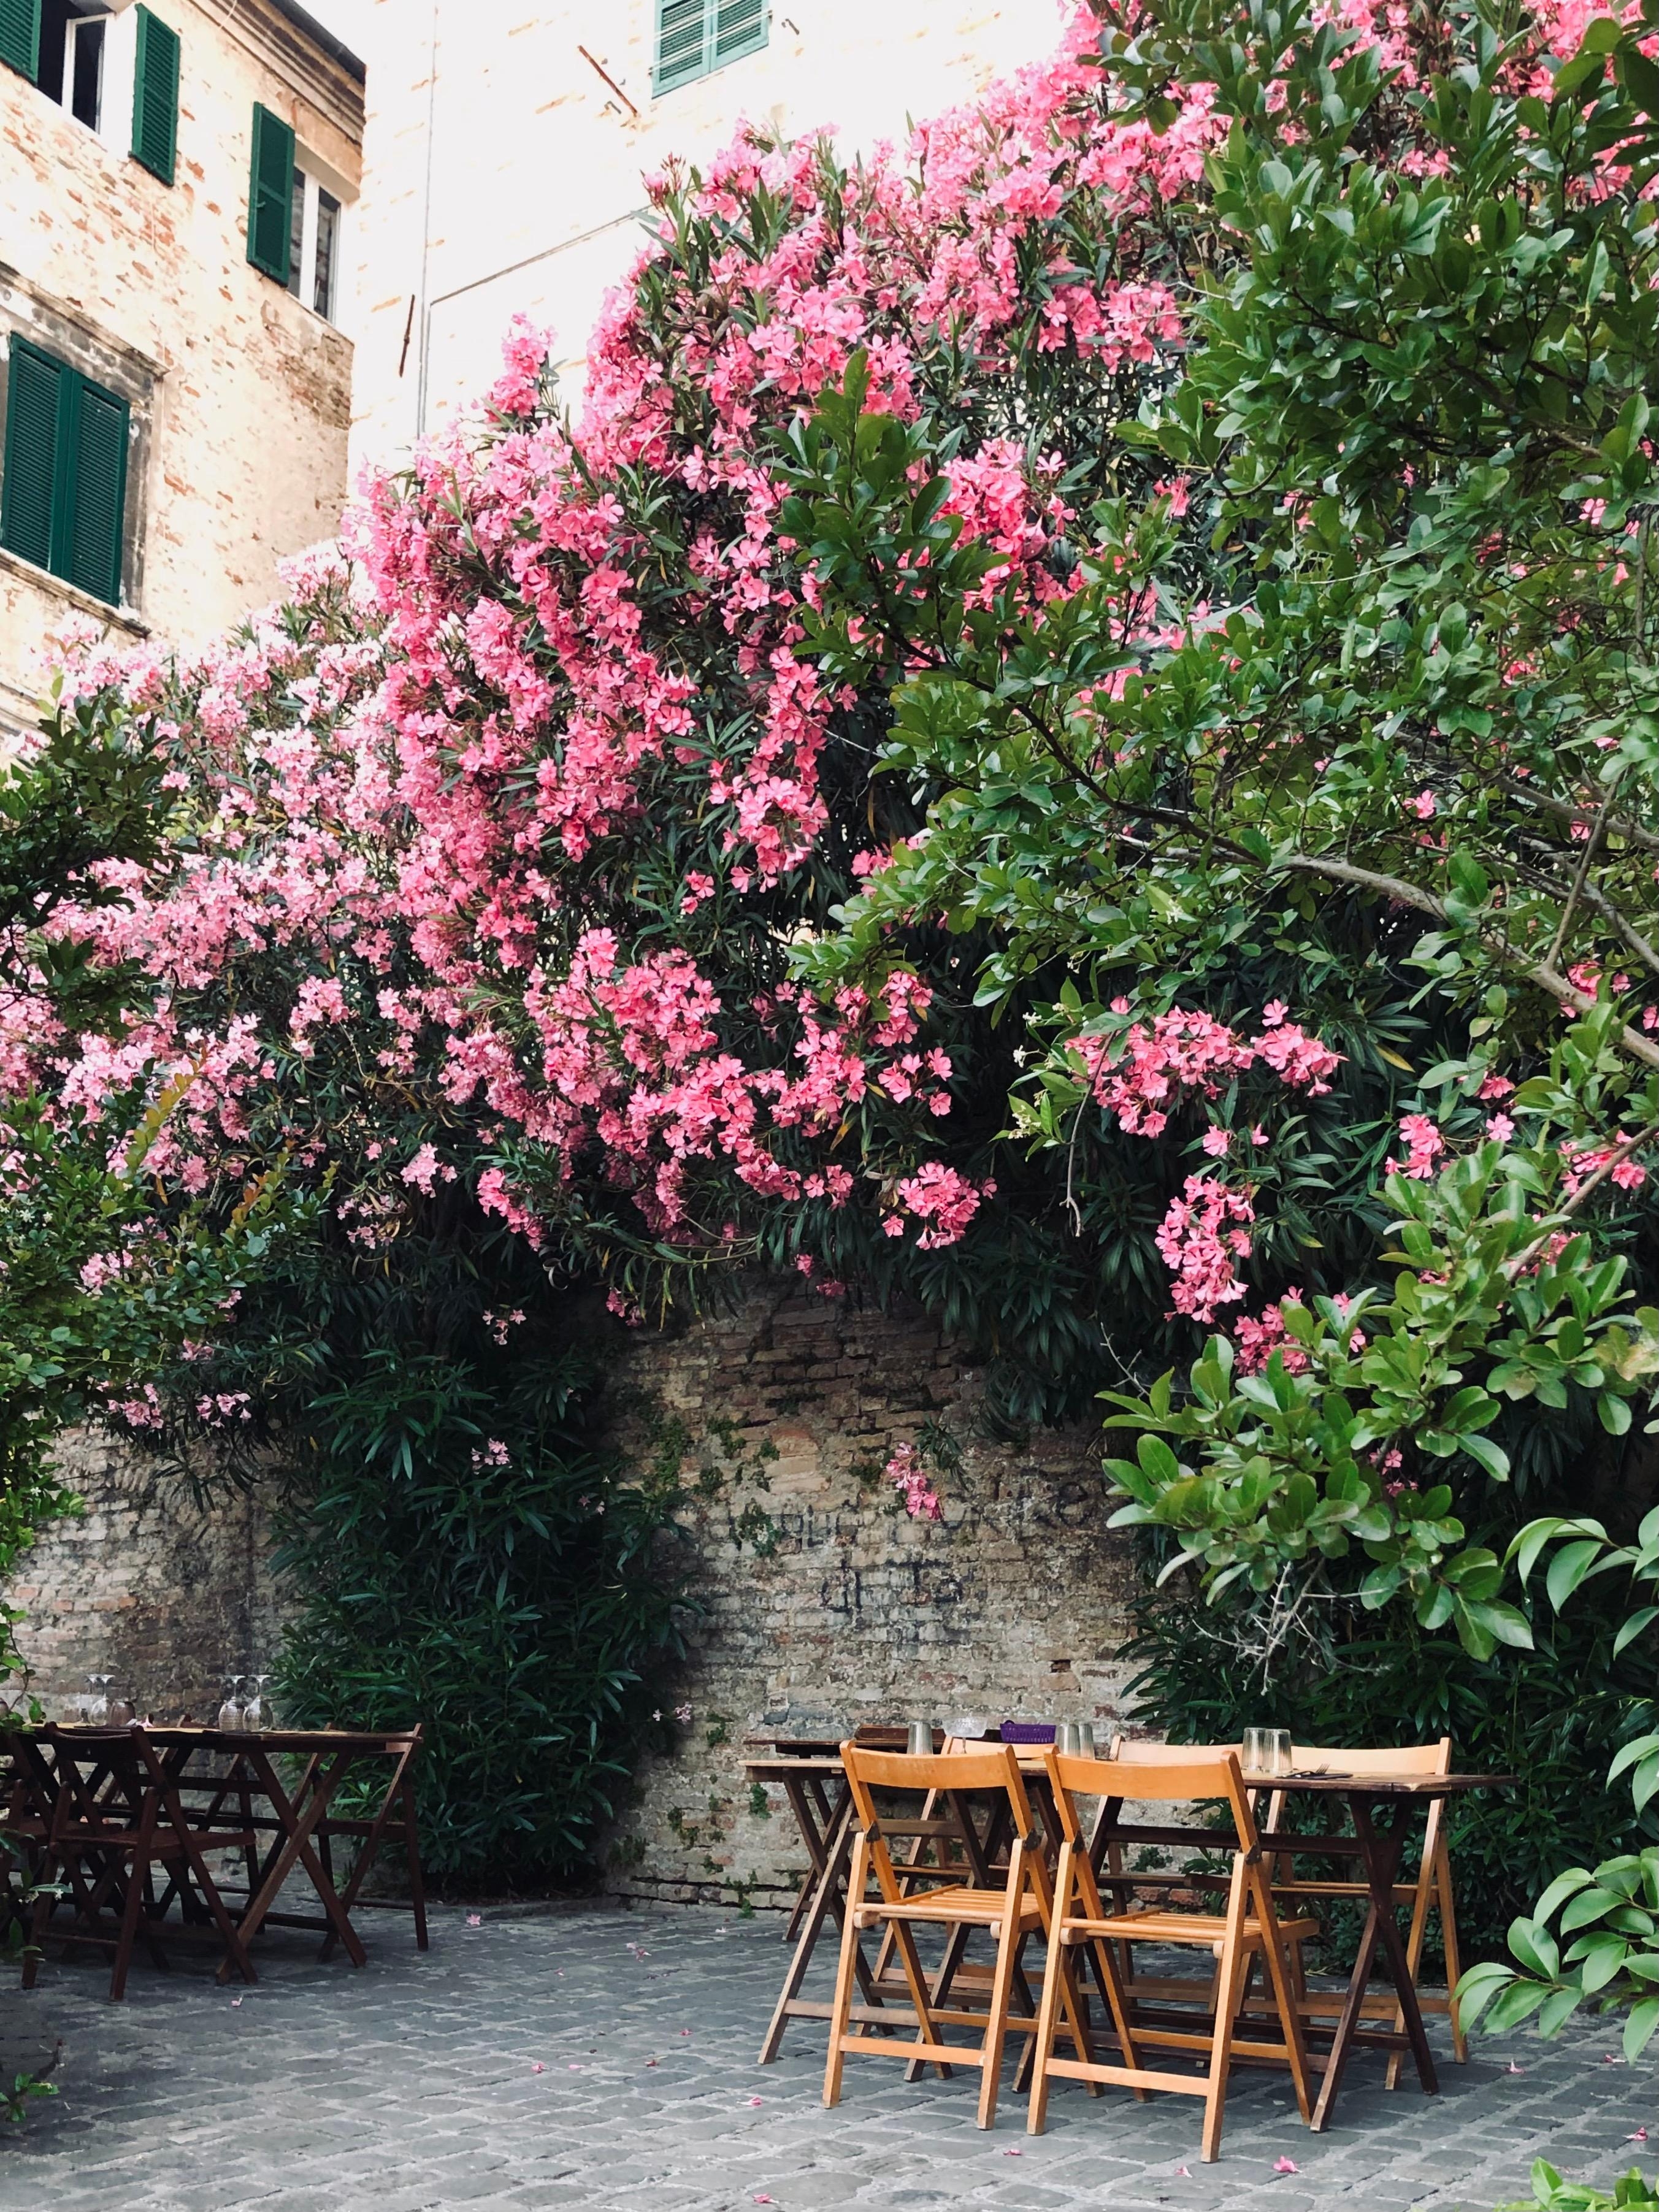 Italian summer.
#oleander #perfectdinnerplace #jesi #italy